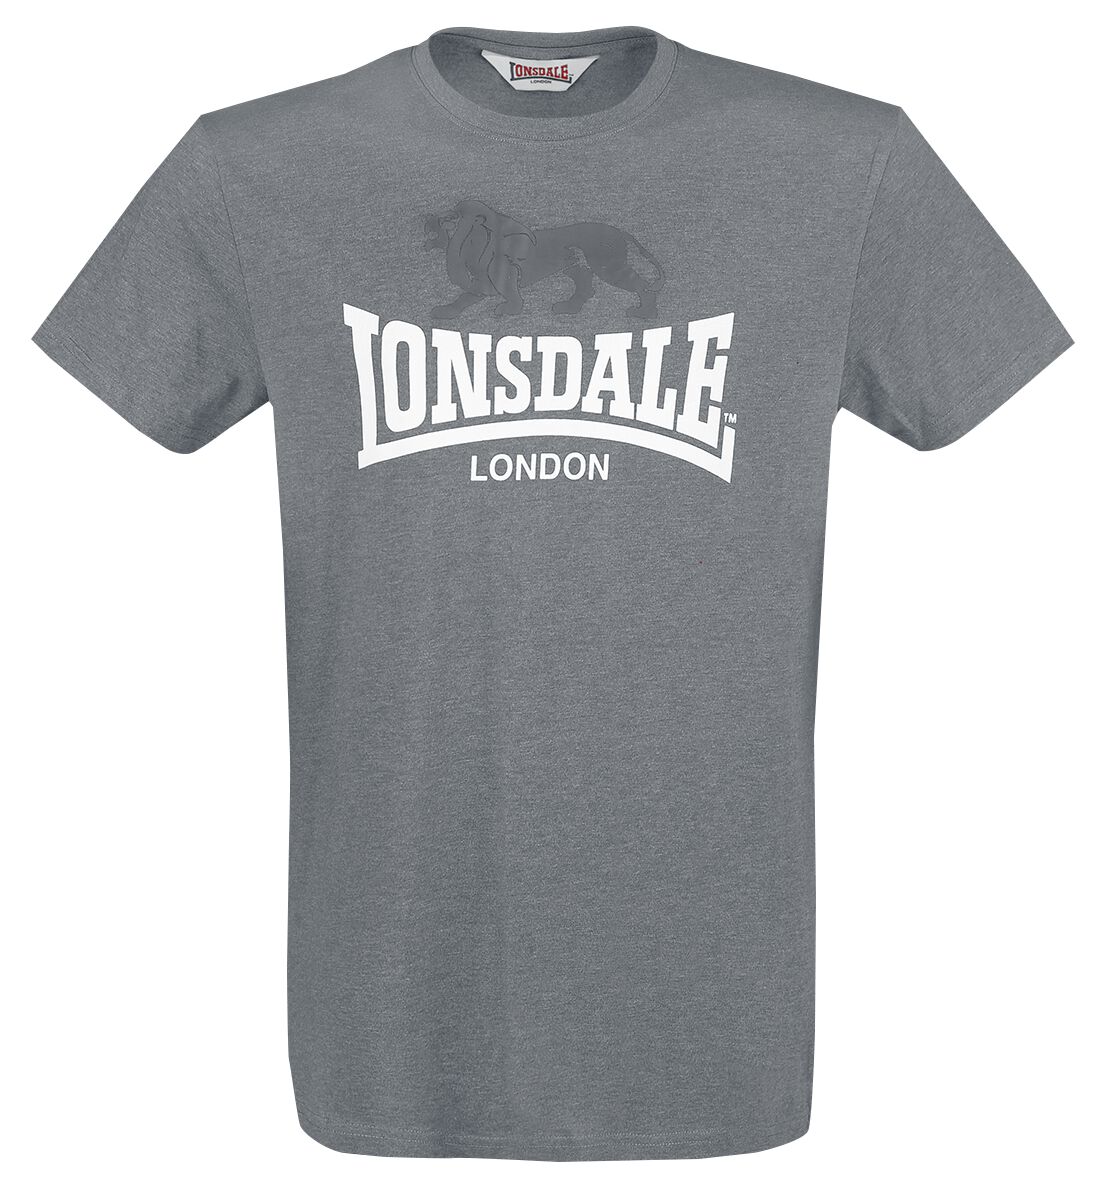 Lonsdale London T-Shirt - Gargrave - M bis 3XL - für Männer - Größe XL - anthrazit